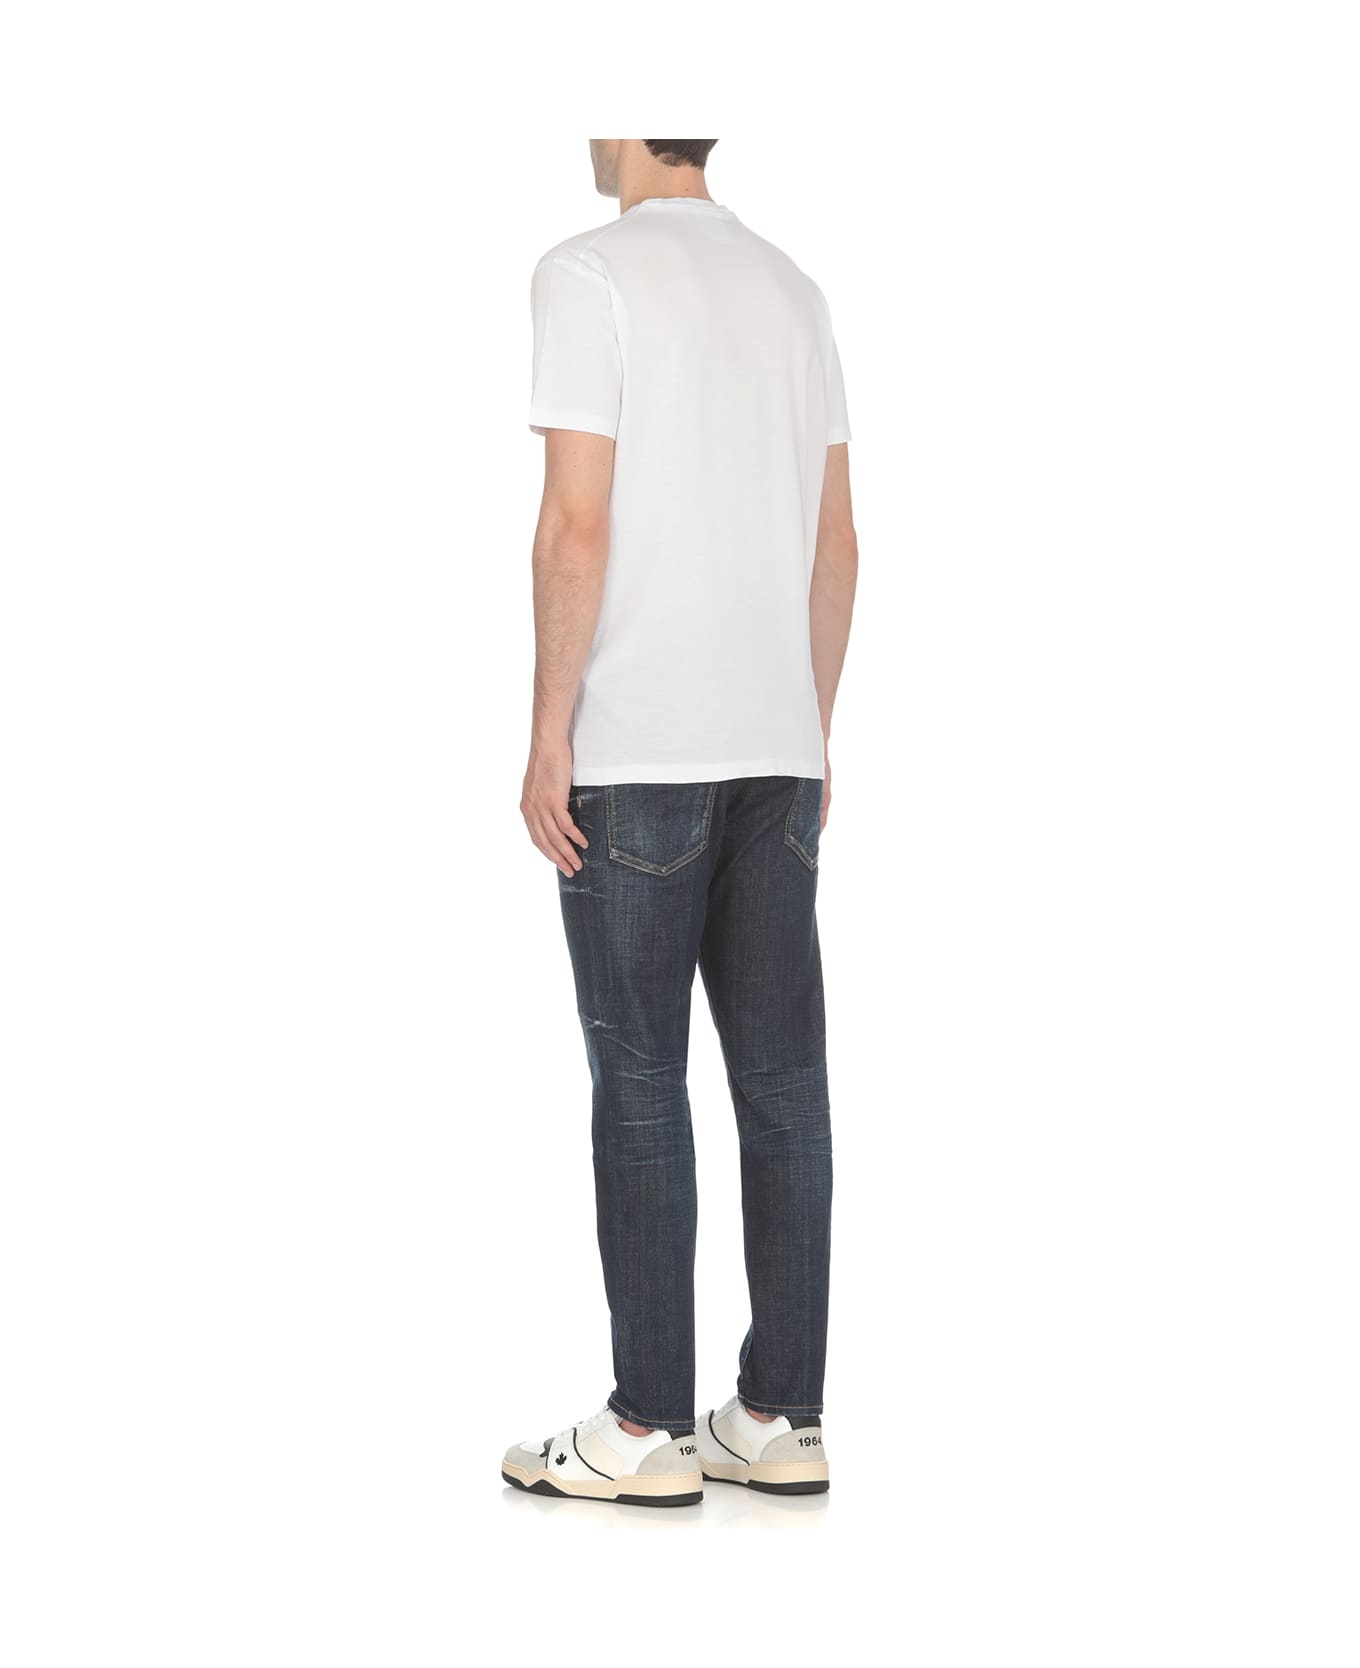 Dsquared2 White Cotton T-shirt - 989 シャツ